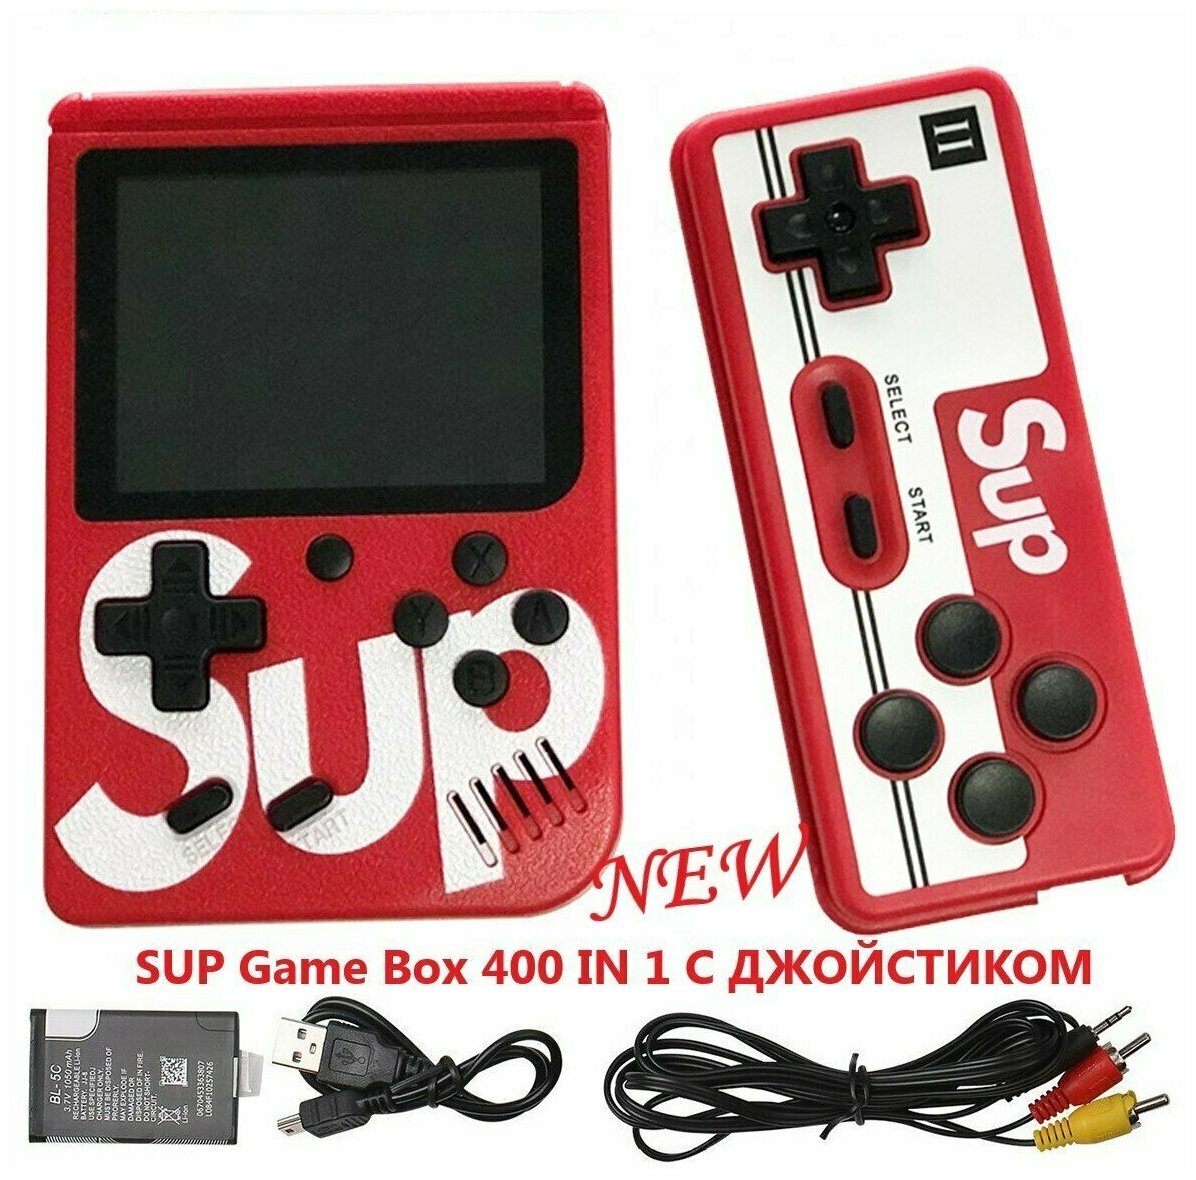 Игровая приставкаPalmexxSUP Game Box 400 in 1 с джойстиком, красный